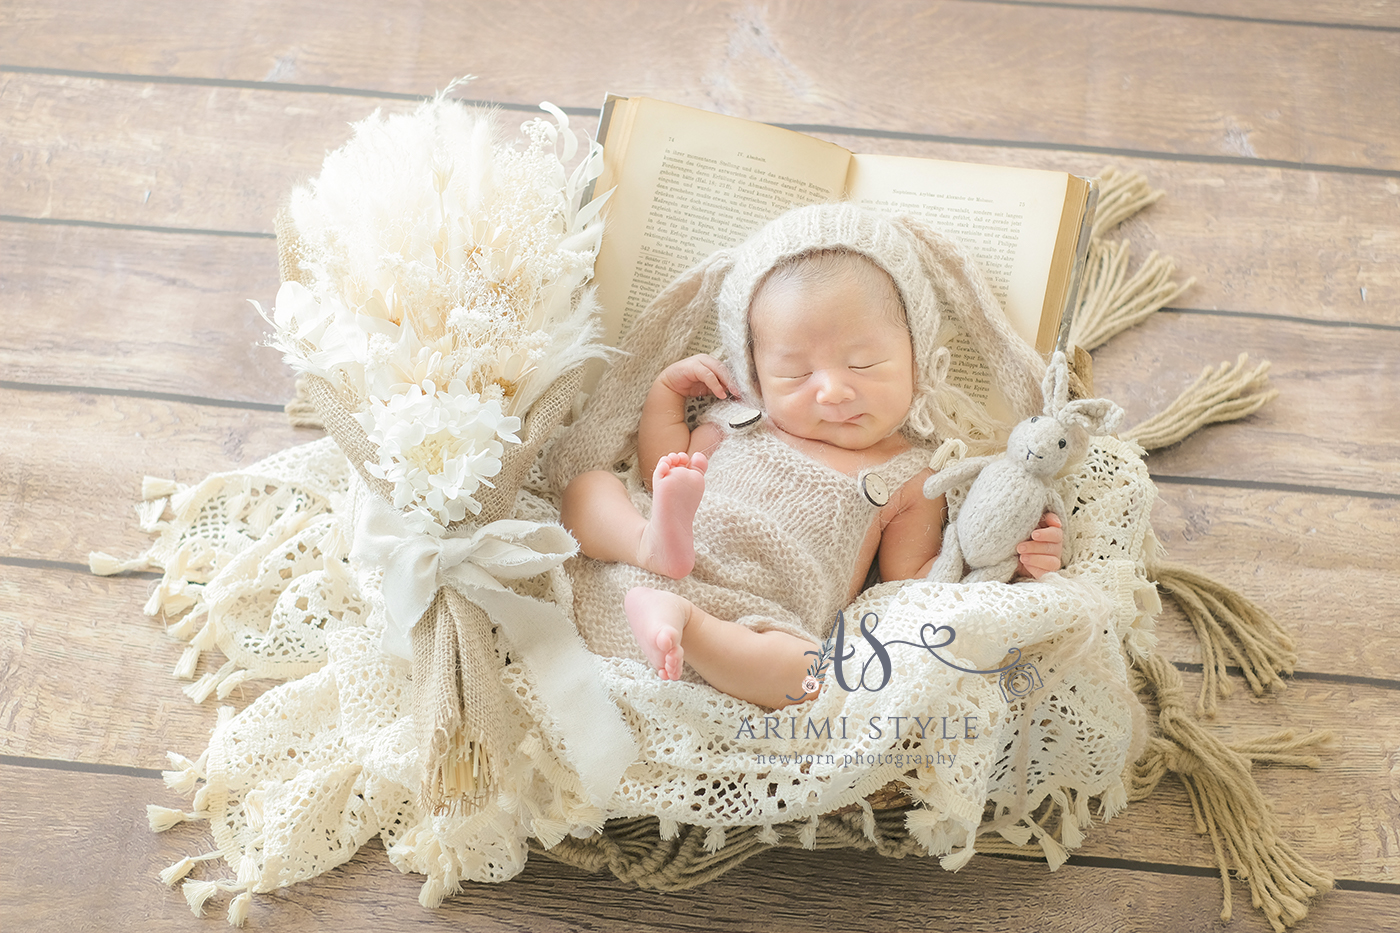 セルフニューボーンフォト | ARIMI Style newborn photography